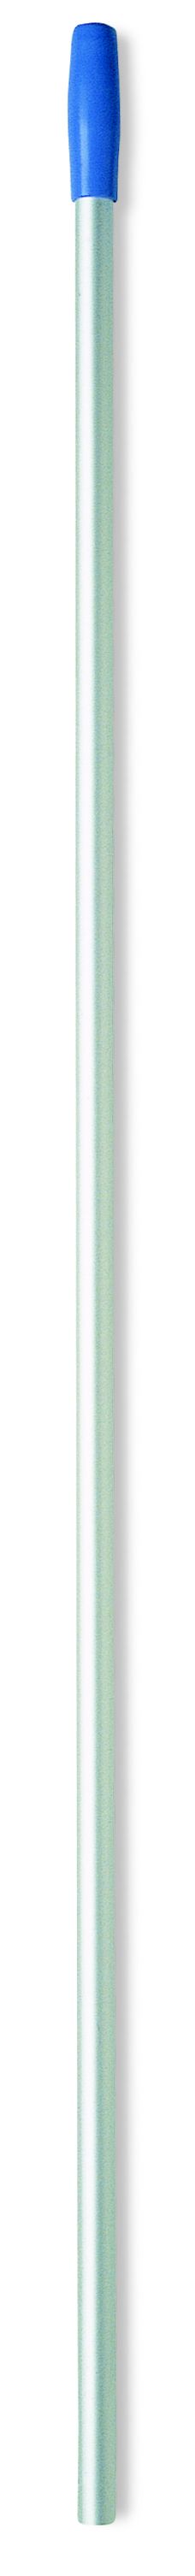 Euromop алюминиевая рукоятка для держателя мопа, с отверстиями, д2,3см x 140см, синяя рукоятка